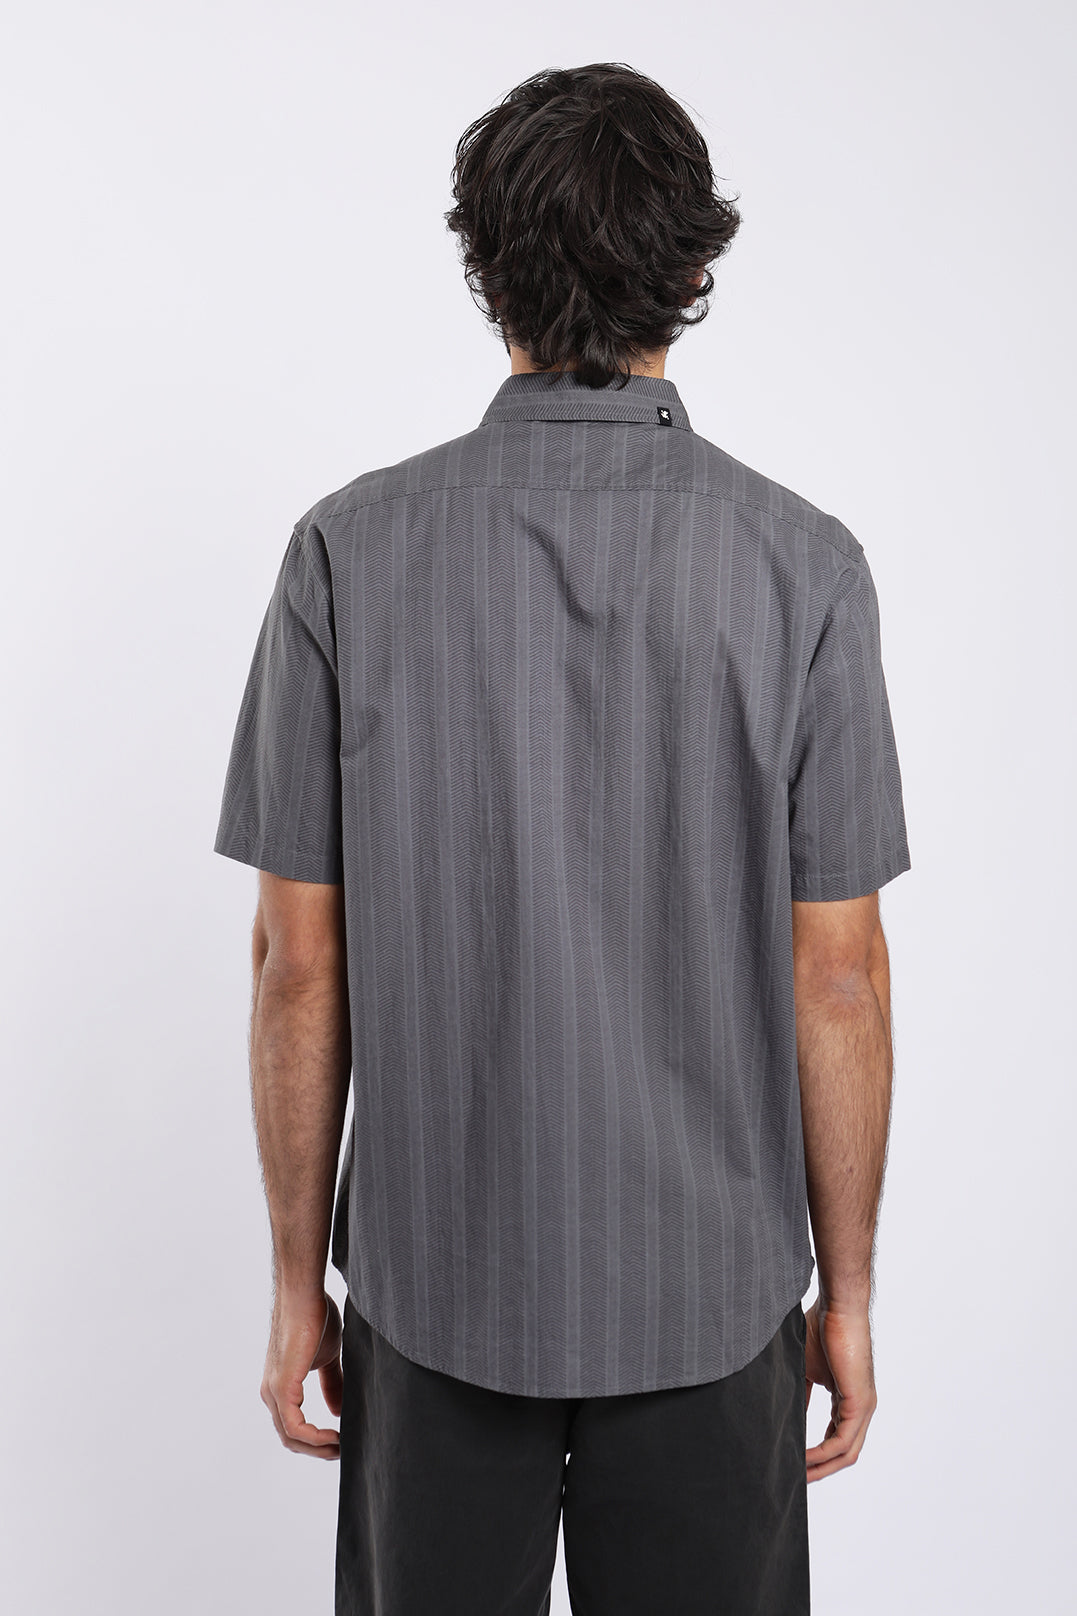 Camisa manga corta Texture Military gris - Poliéster reciclado